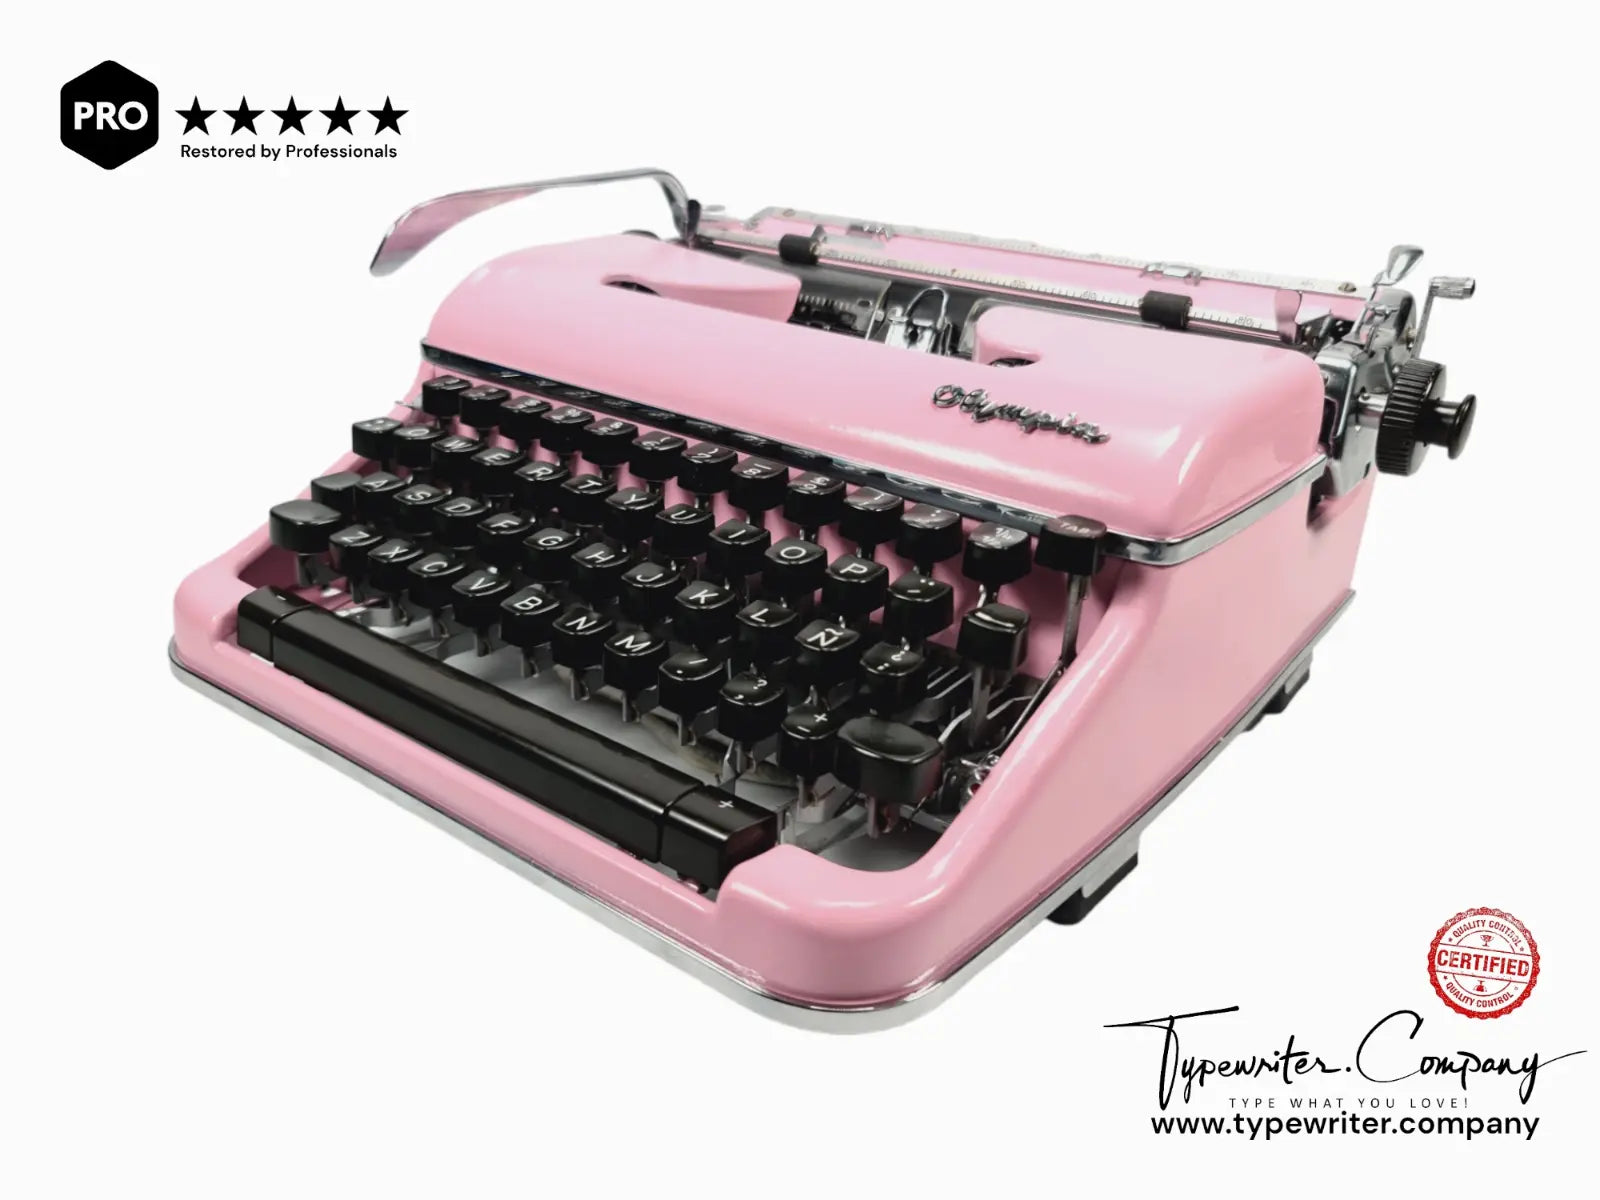 PINK Olimpia SM4 - Vintage German Typewriter - Working Typewriter - ElGranero Typewriter.Company